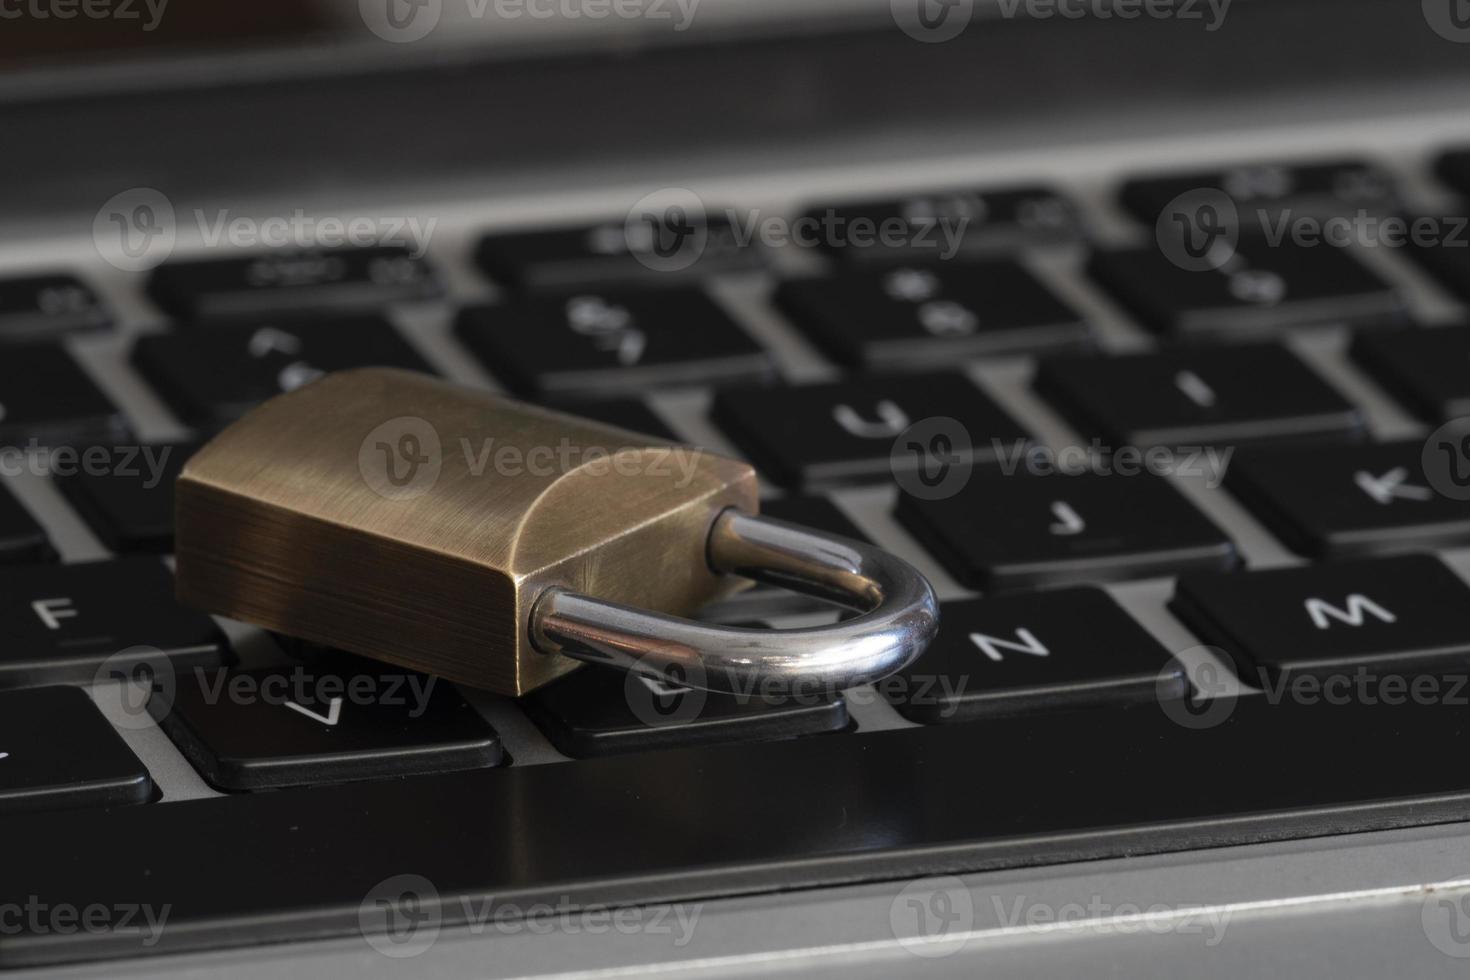 Internet y seguridad informática representada por un candado cerrado sobre un teclado negro foto